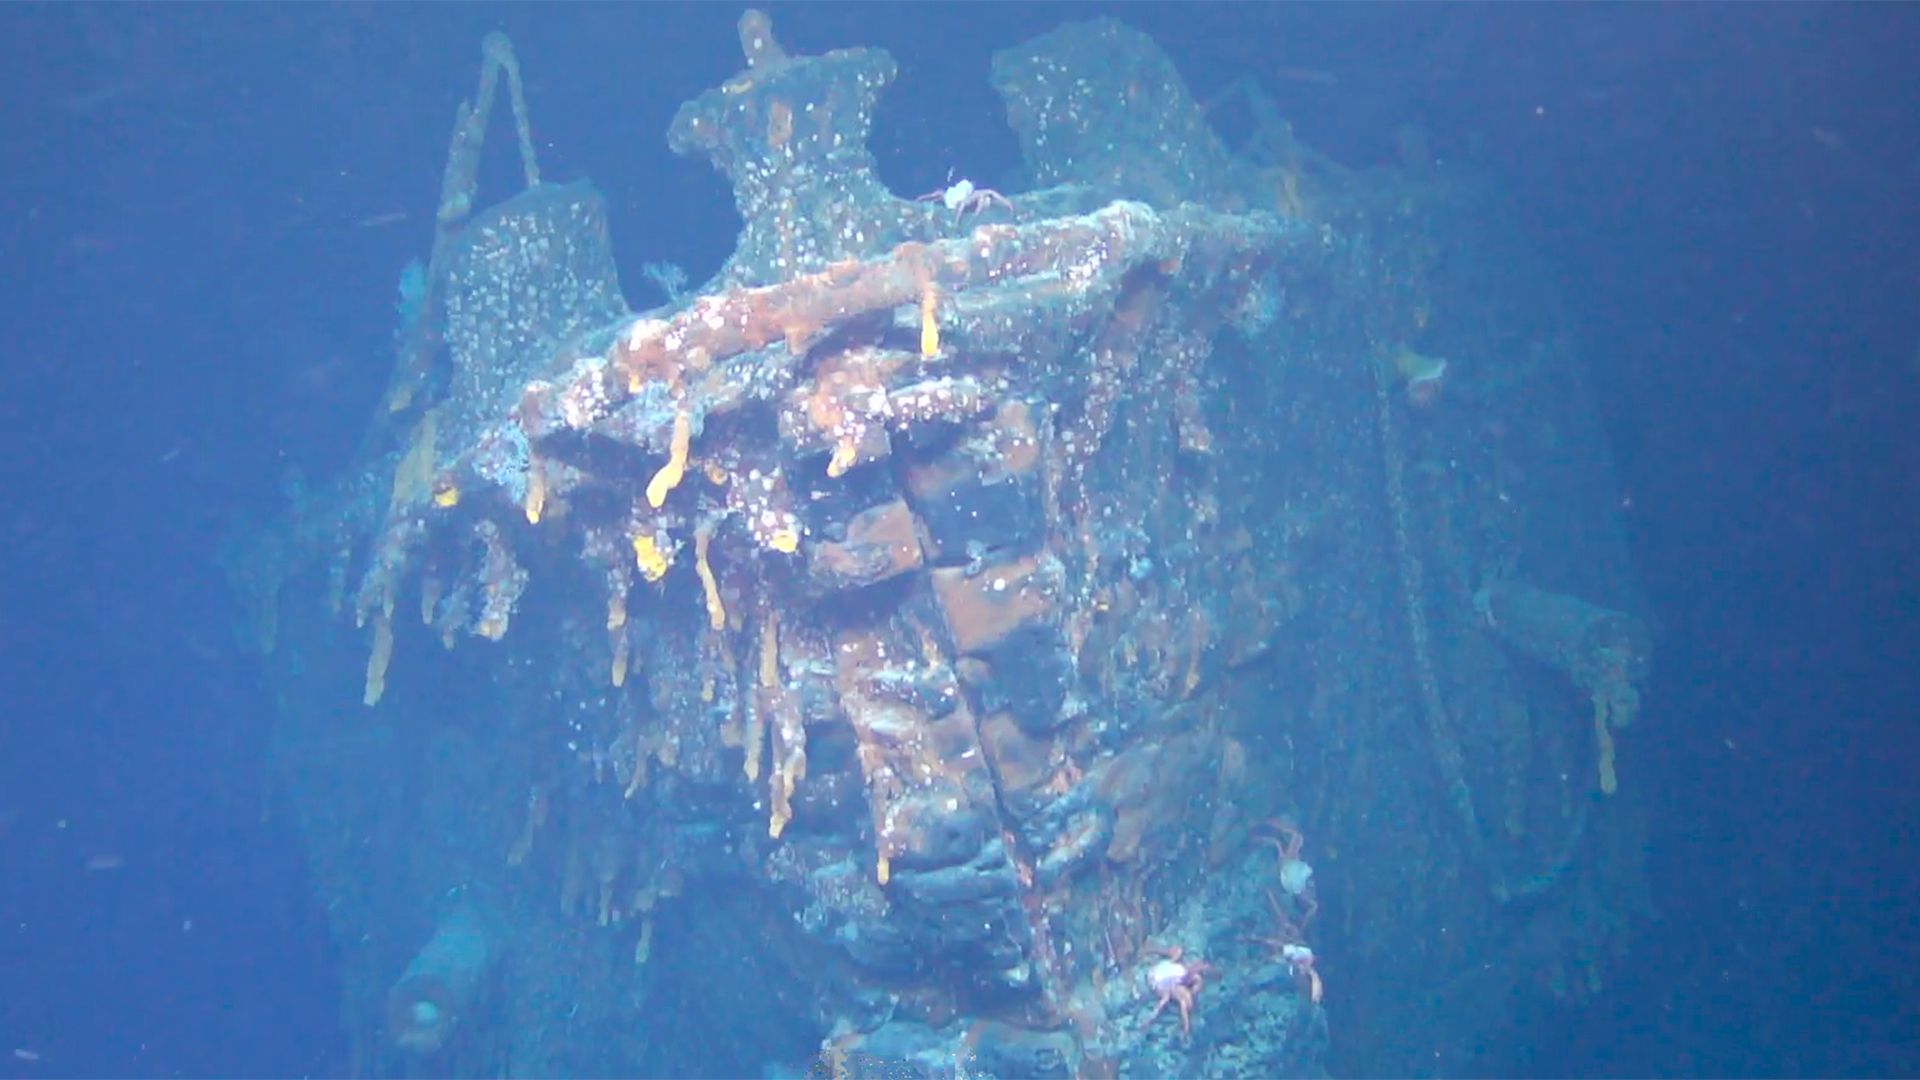 El buque tenía una tripulación de 840 hombres cuando fue hundido (Cortesía del Falklands Maritime Heritage Trust)